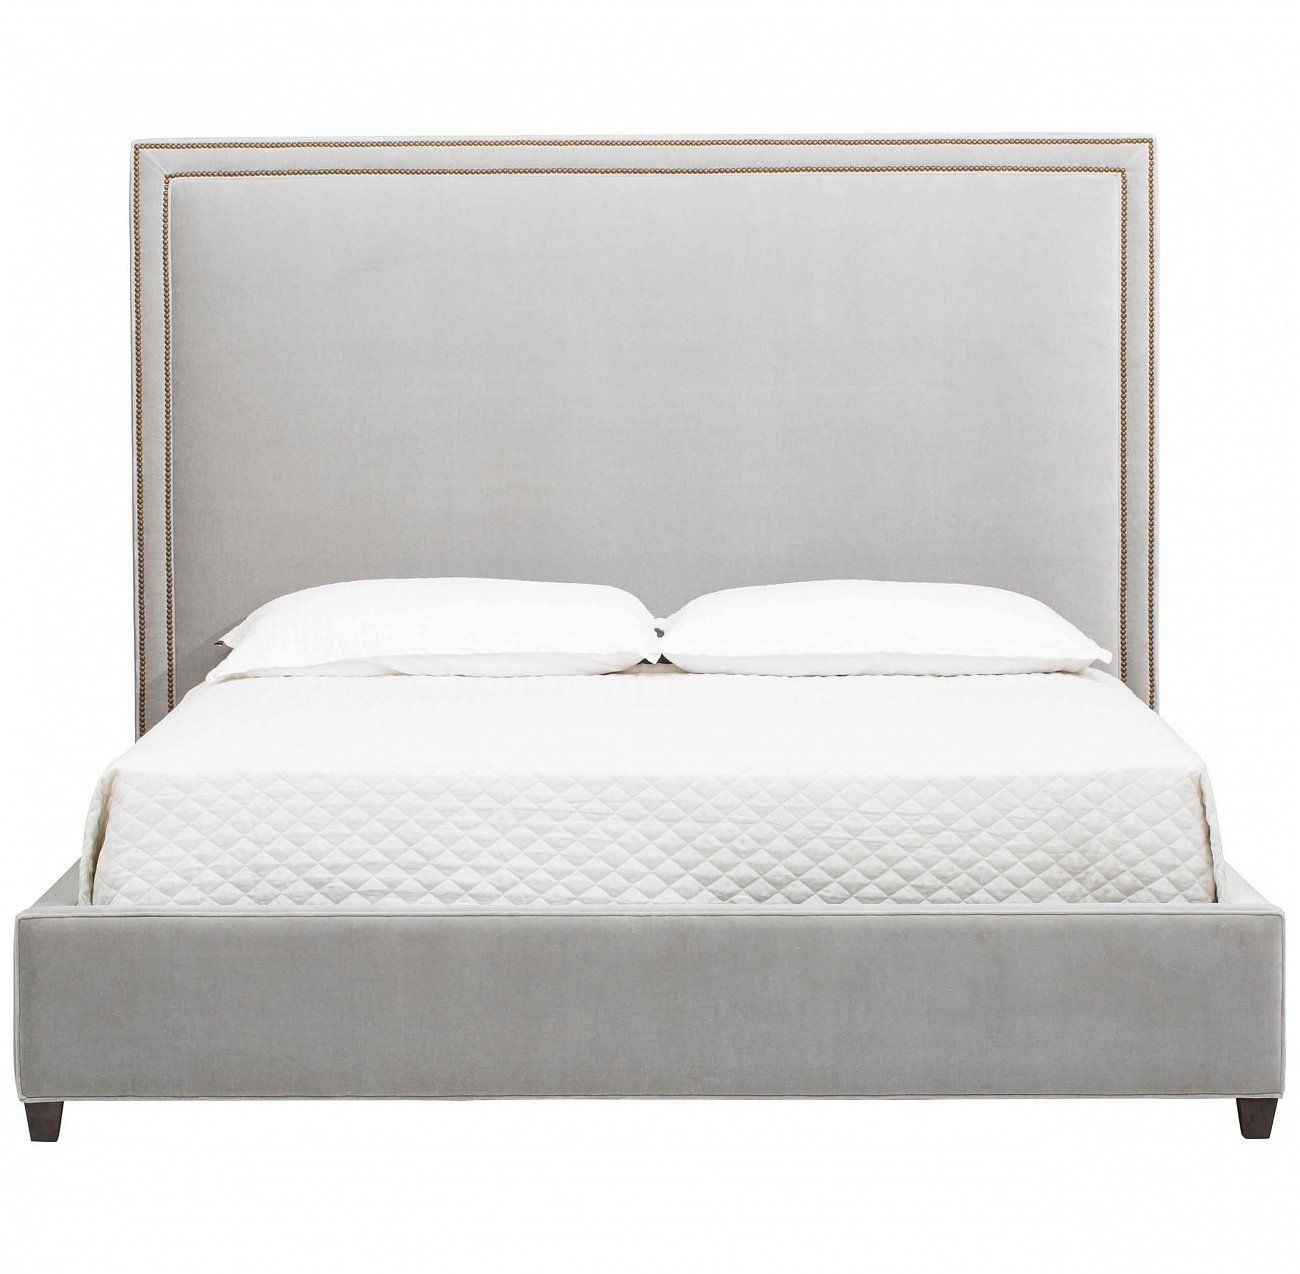 Double bed 160x200 cm gray Dakota